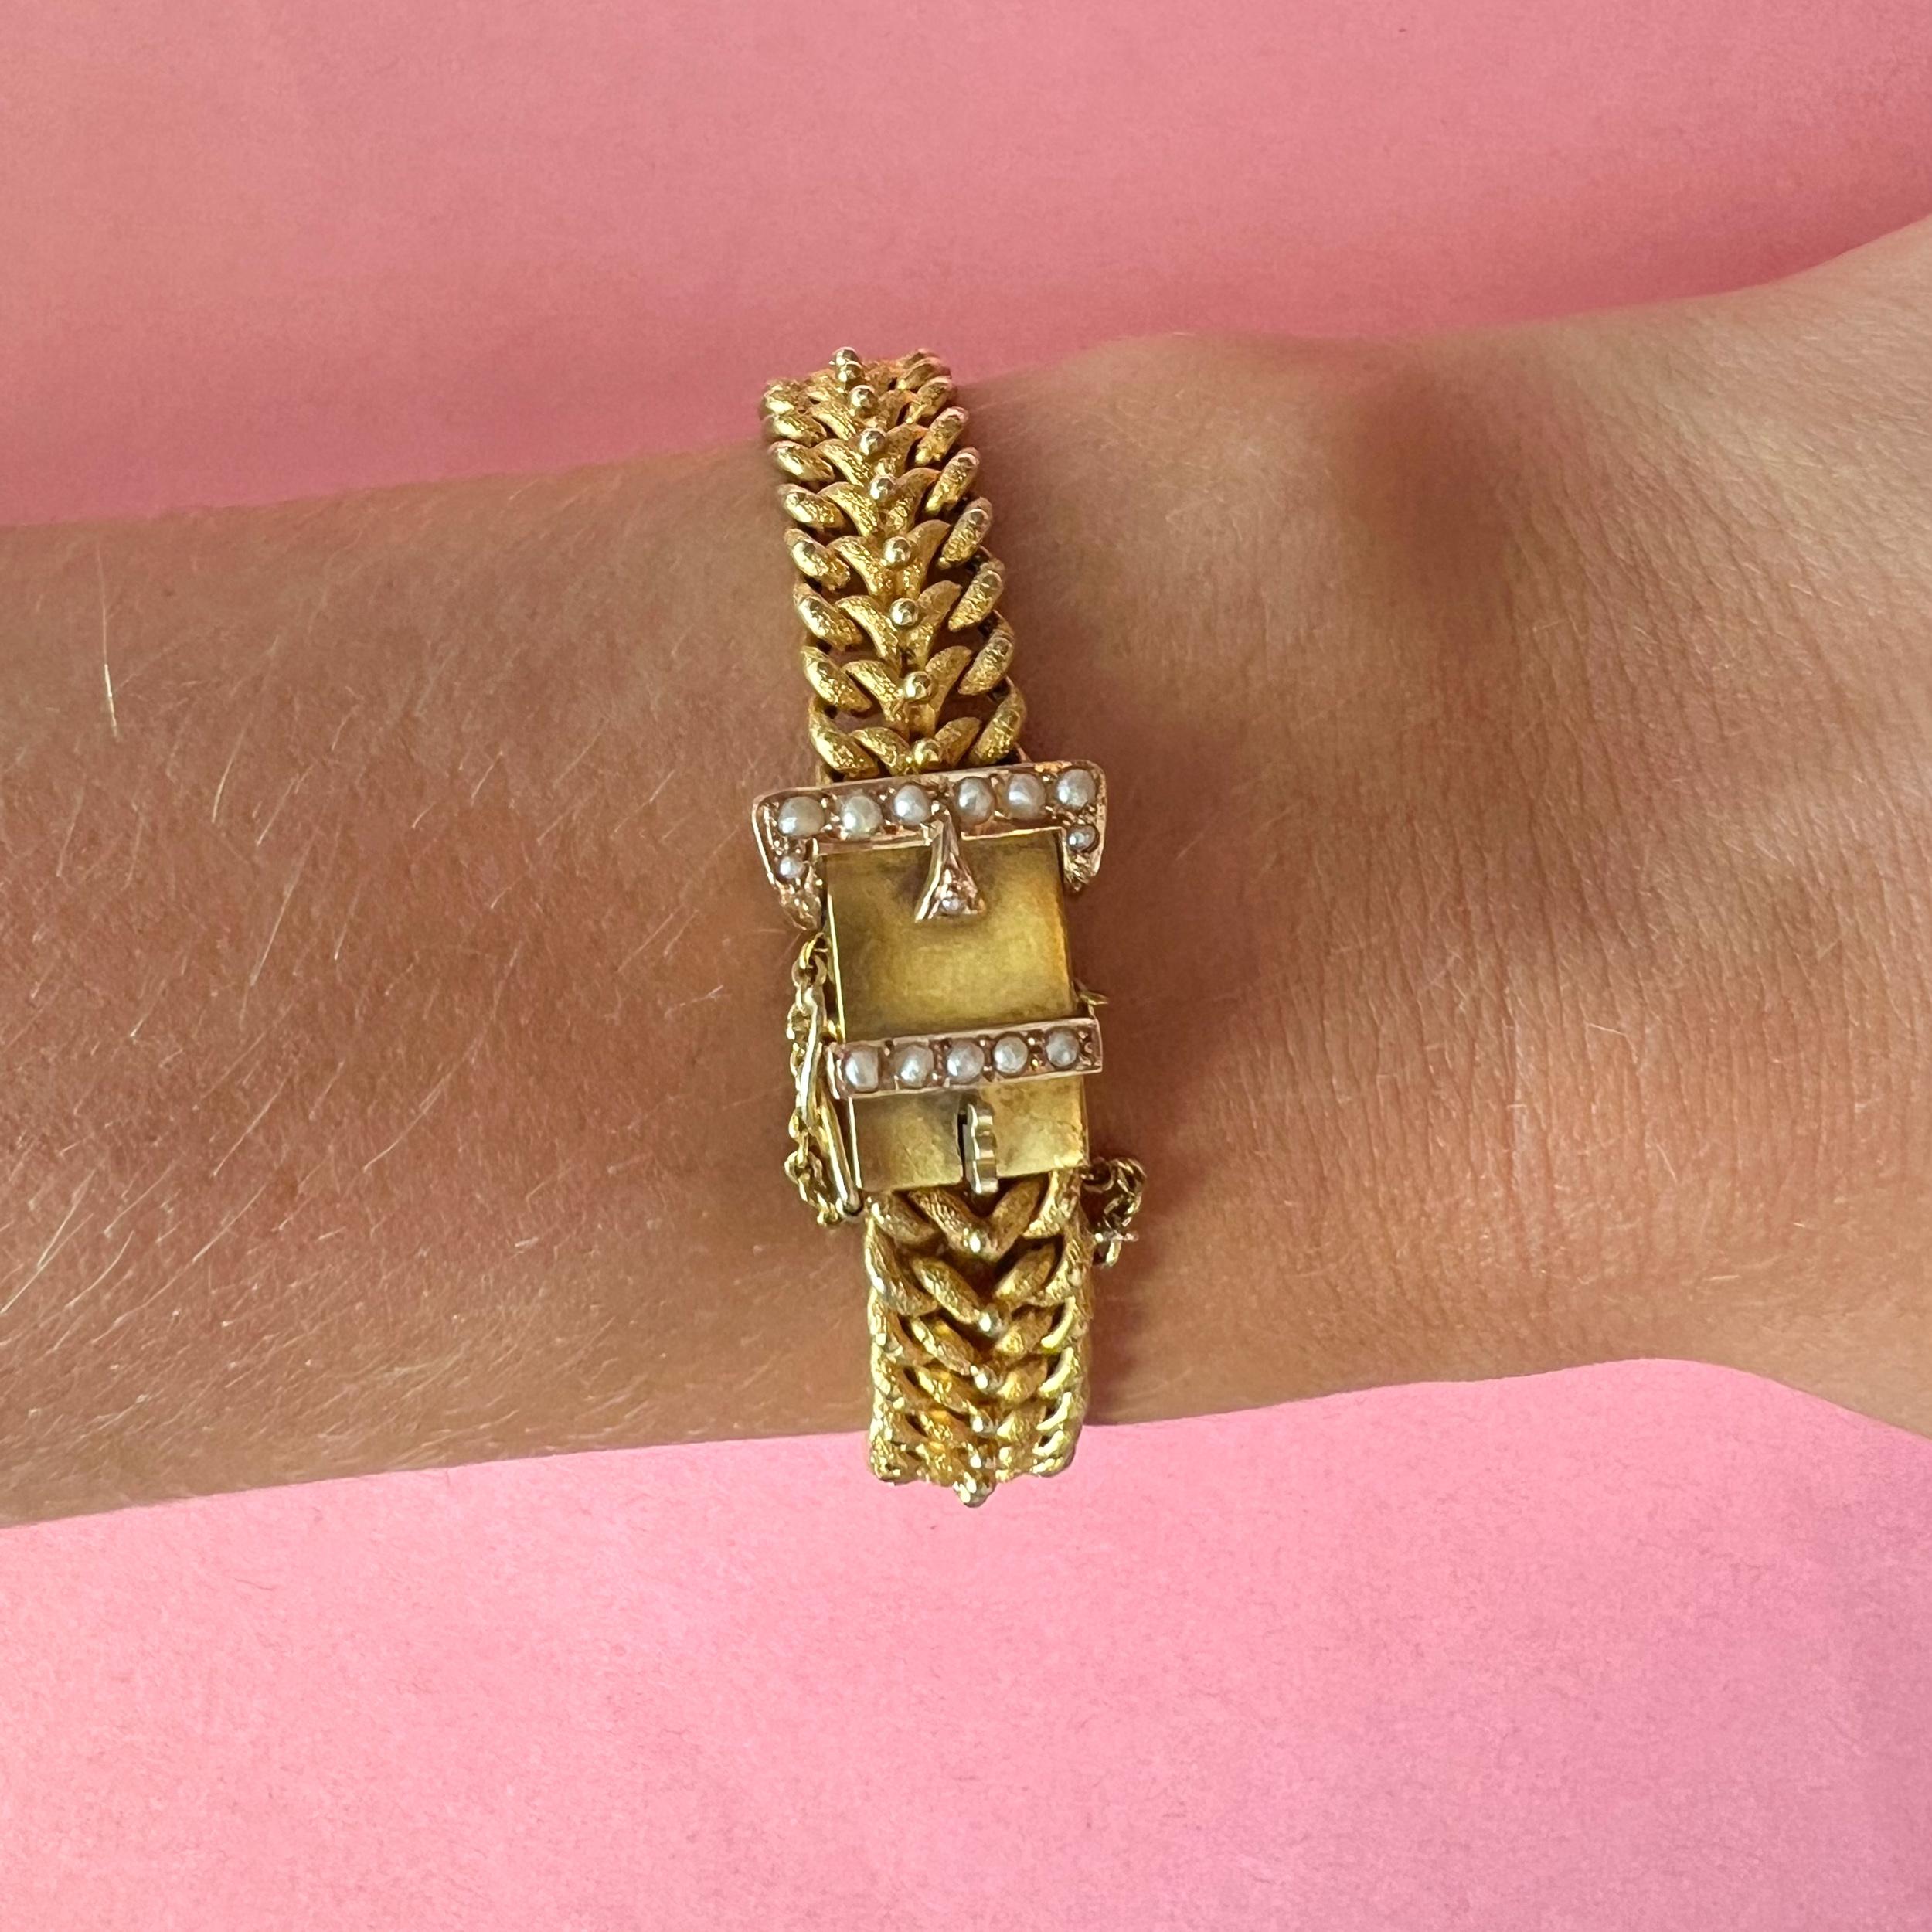 Il s'agit d'un bracelet ancien en or satiné de la fin de l'époque victorienne des années 1890, serti de perles de rocaille. Ce magnifique bracelet à boucle est en or 14 carats avec une finition satinée mate sur les chaînes. Des granulations d'or